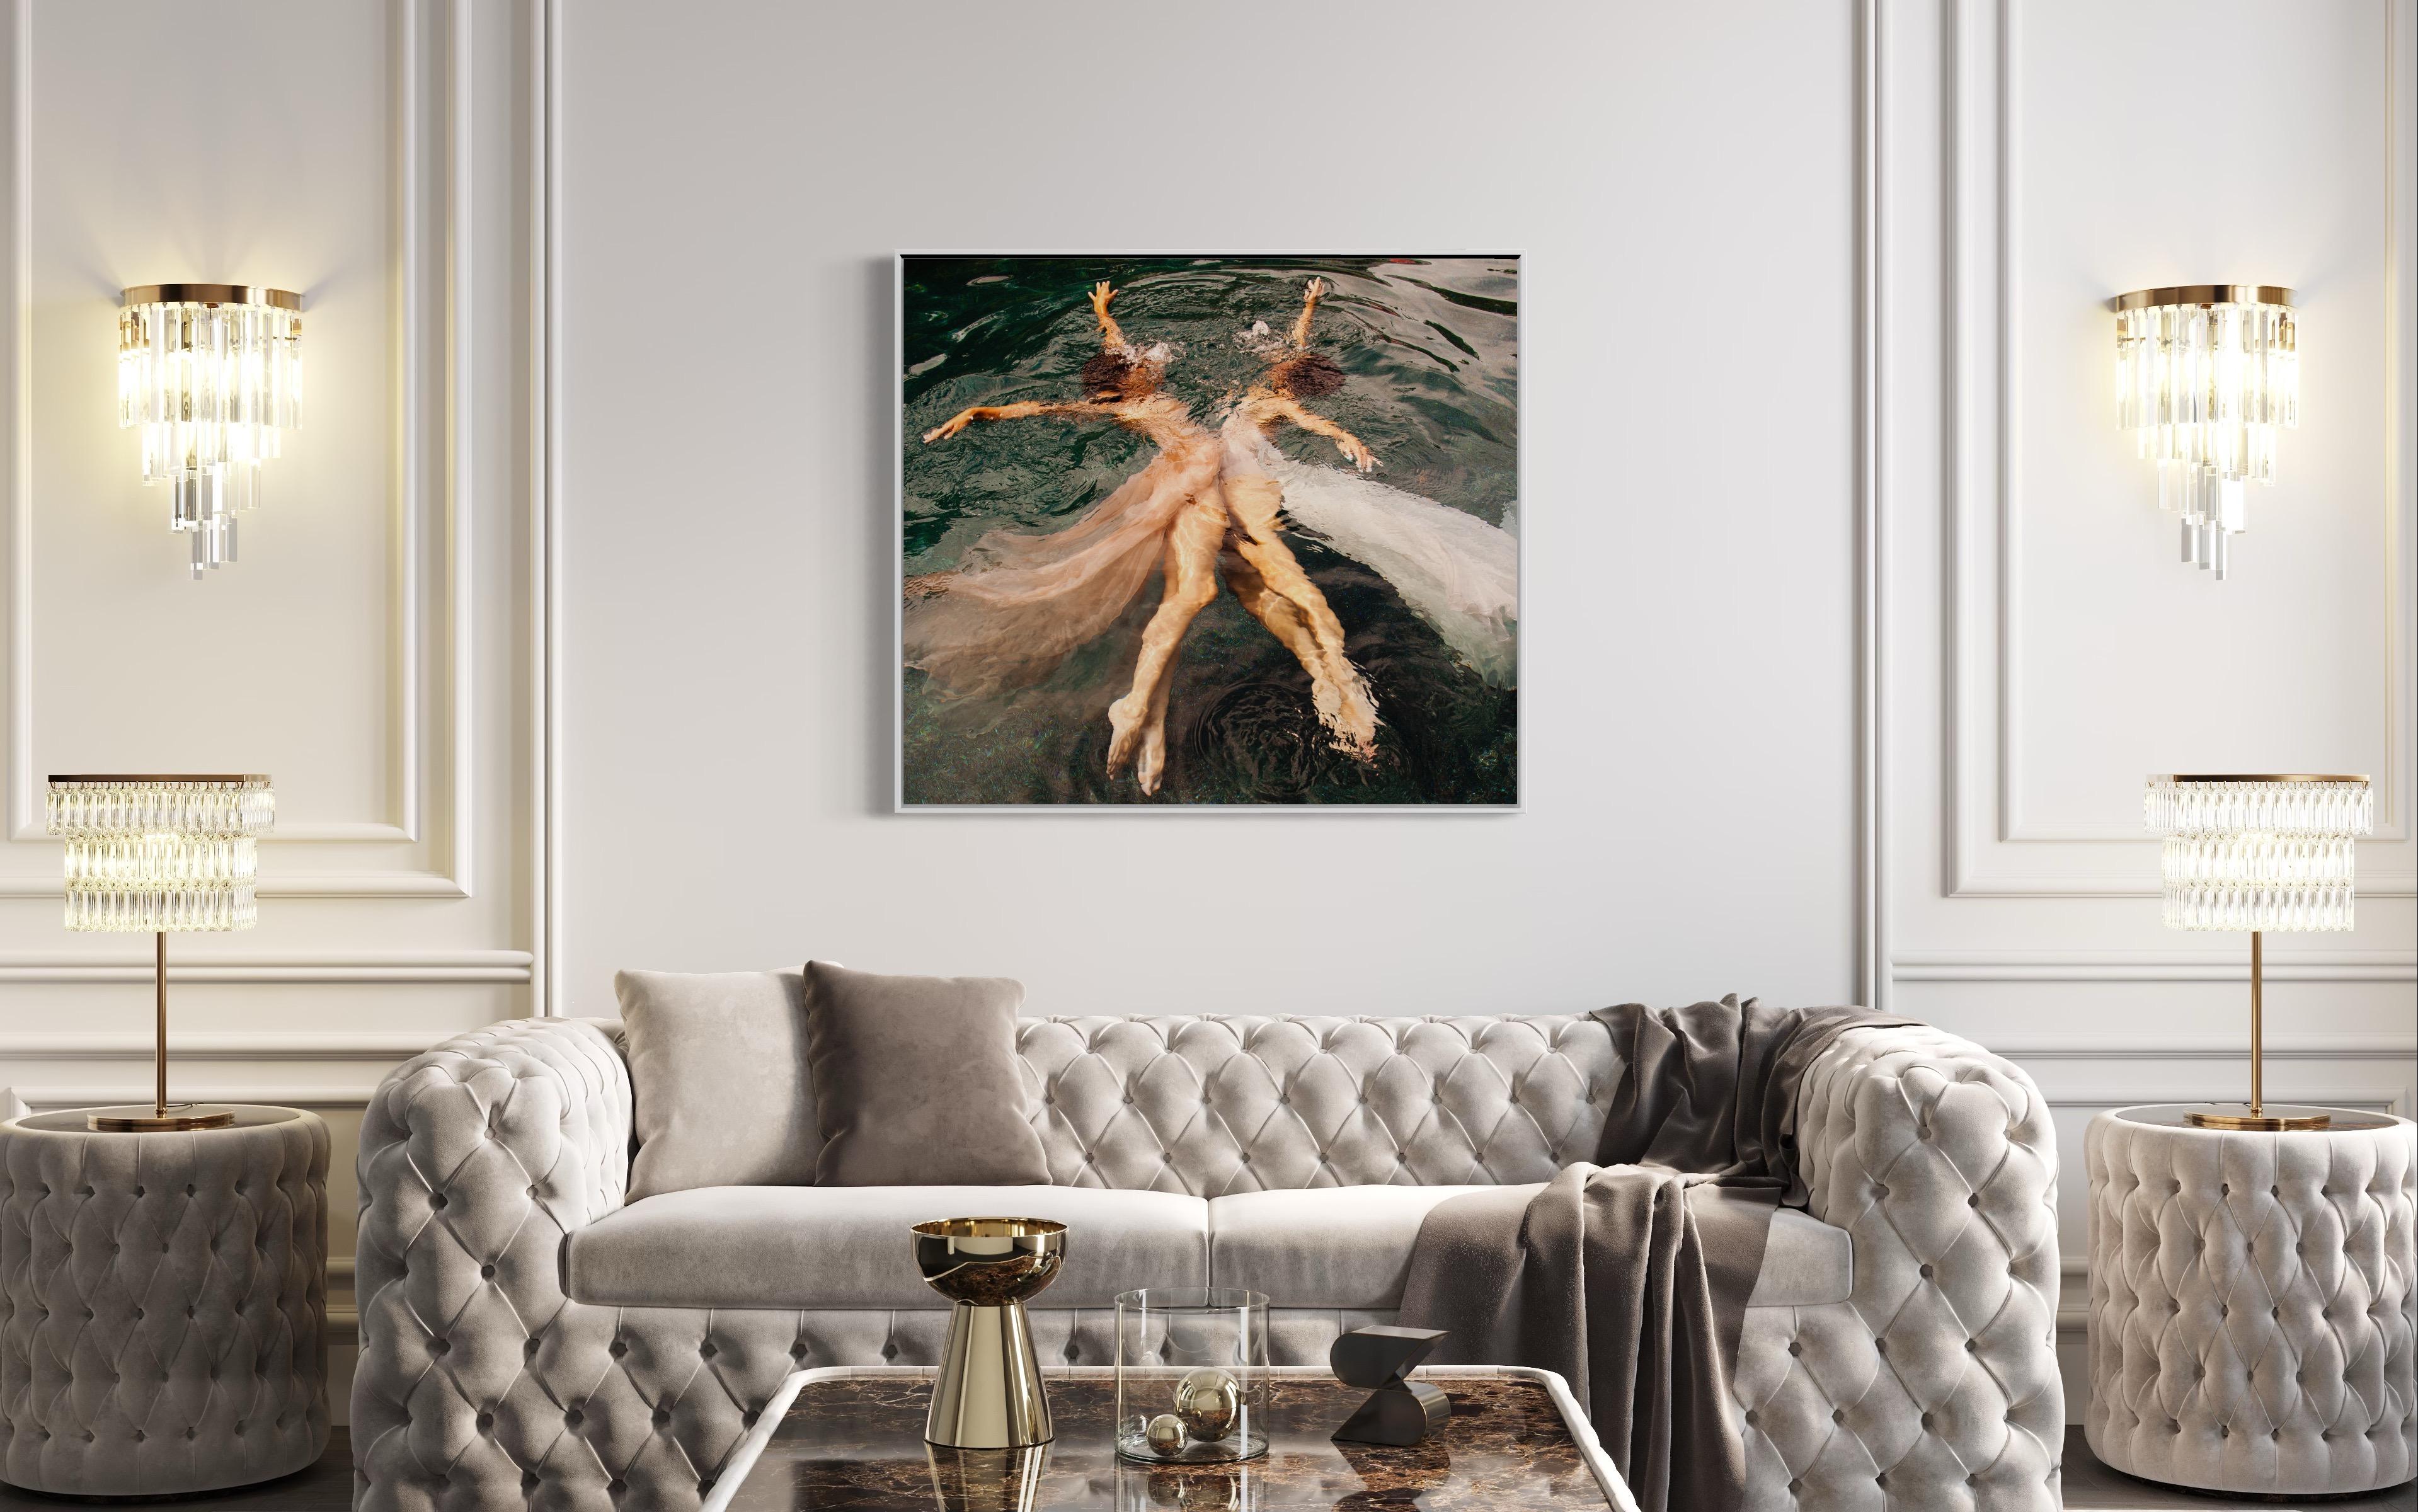 Diese zeitgenössische figurale Fotografie von Alyssa Fortin in limitierter Auflage zeigt einen Blick von oben auf die Wasseroberfläche mit zwei weiblichen Figuren in tänzerischen Posen. Sie stehen sich gegenüber und strecken ihre Arme und Beine aus,